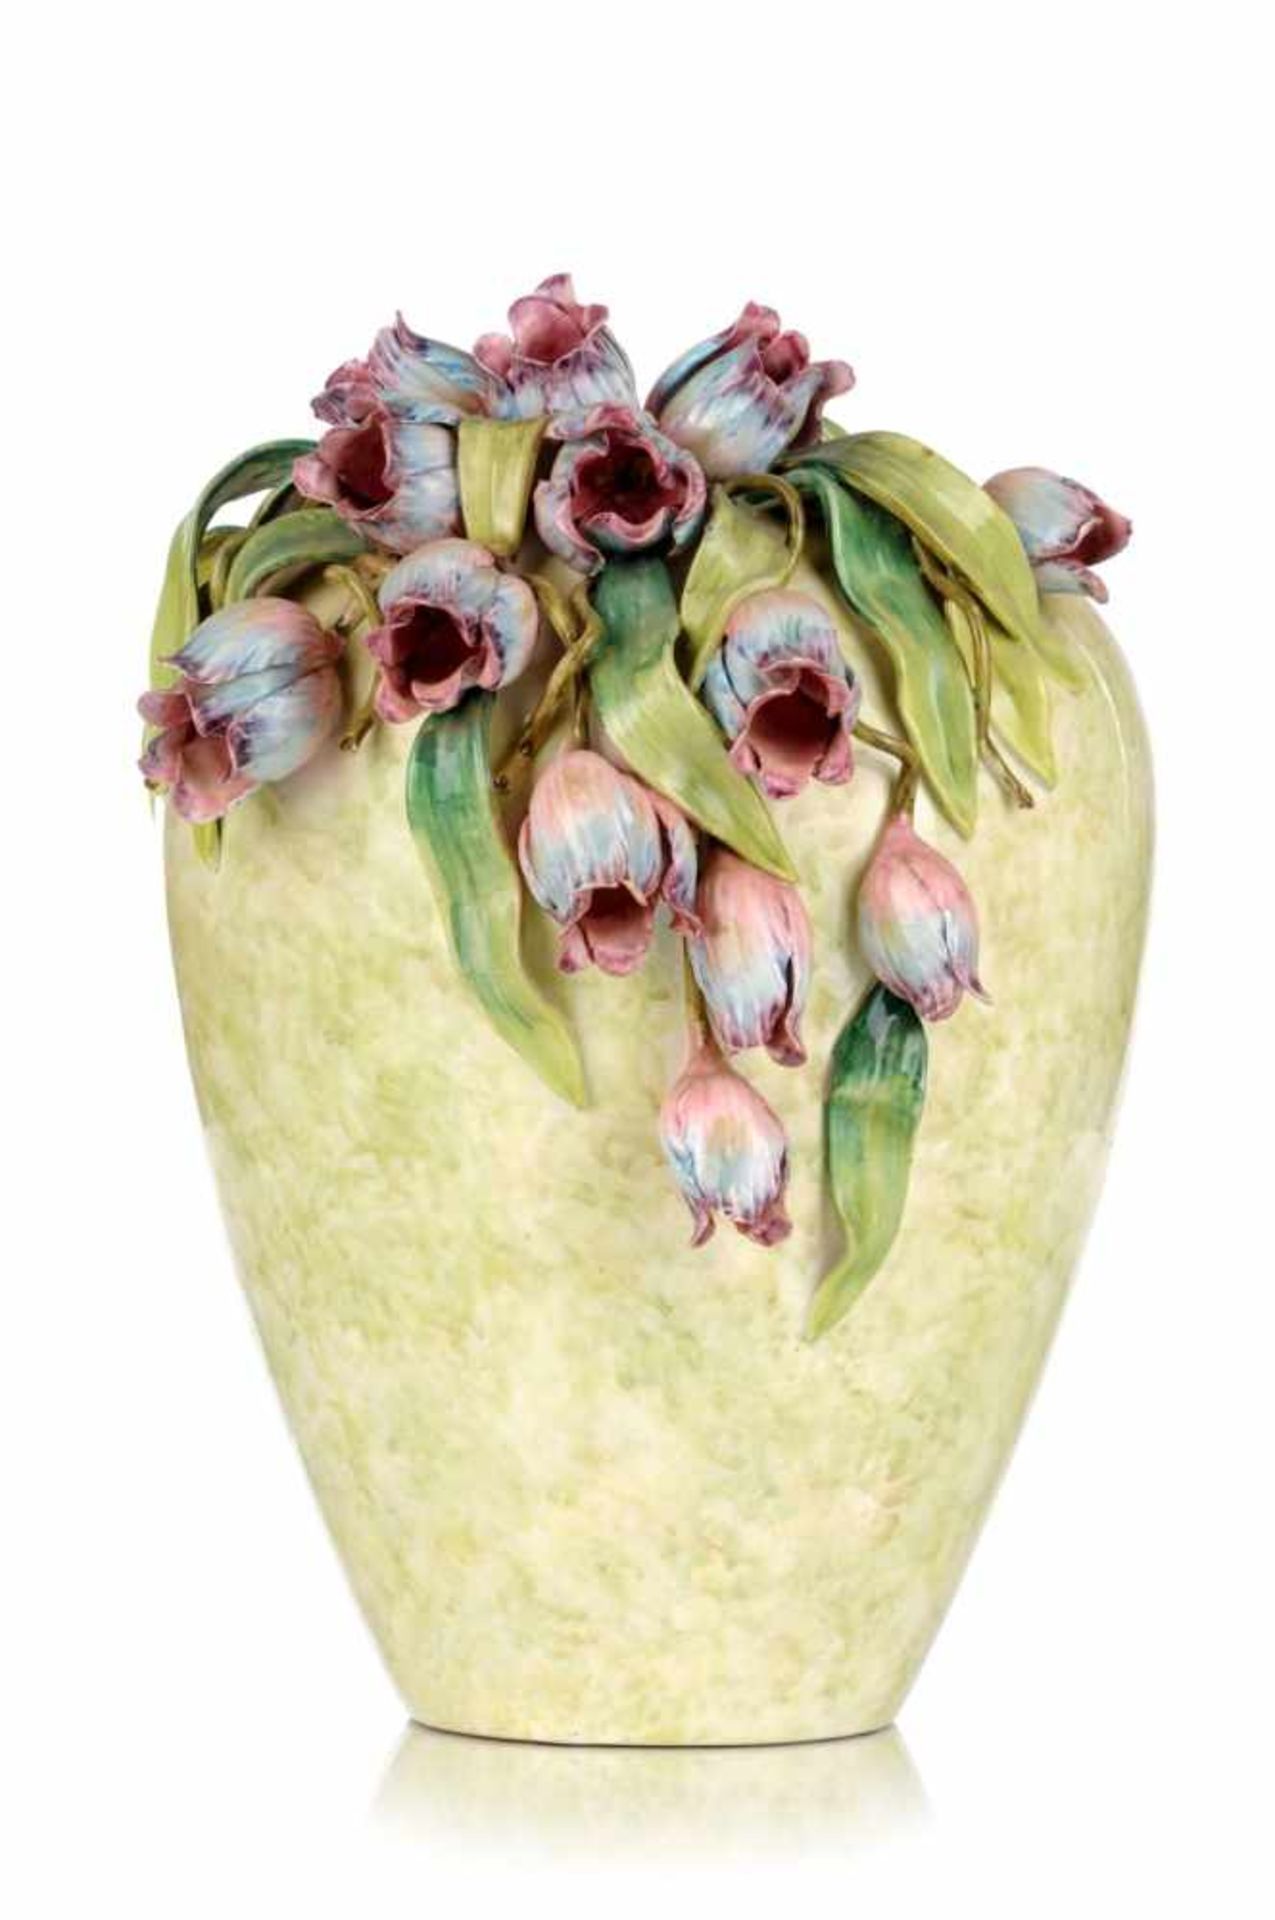 Große Tulpen-Vase. Norditalien. Um 1980.Steingut, cremefarbender Scherben, glasiert und farbig